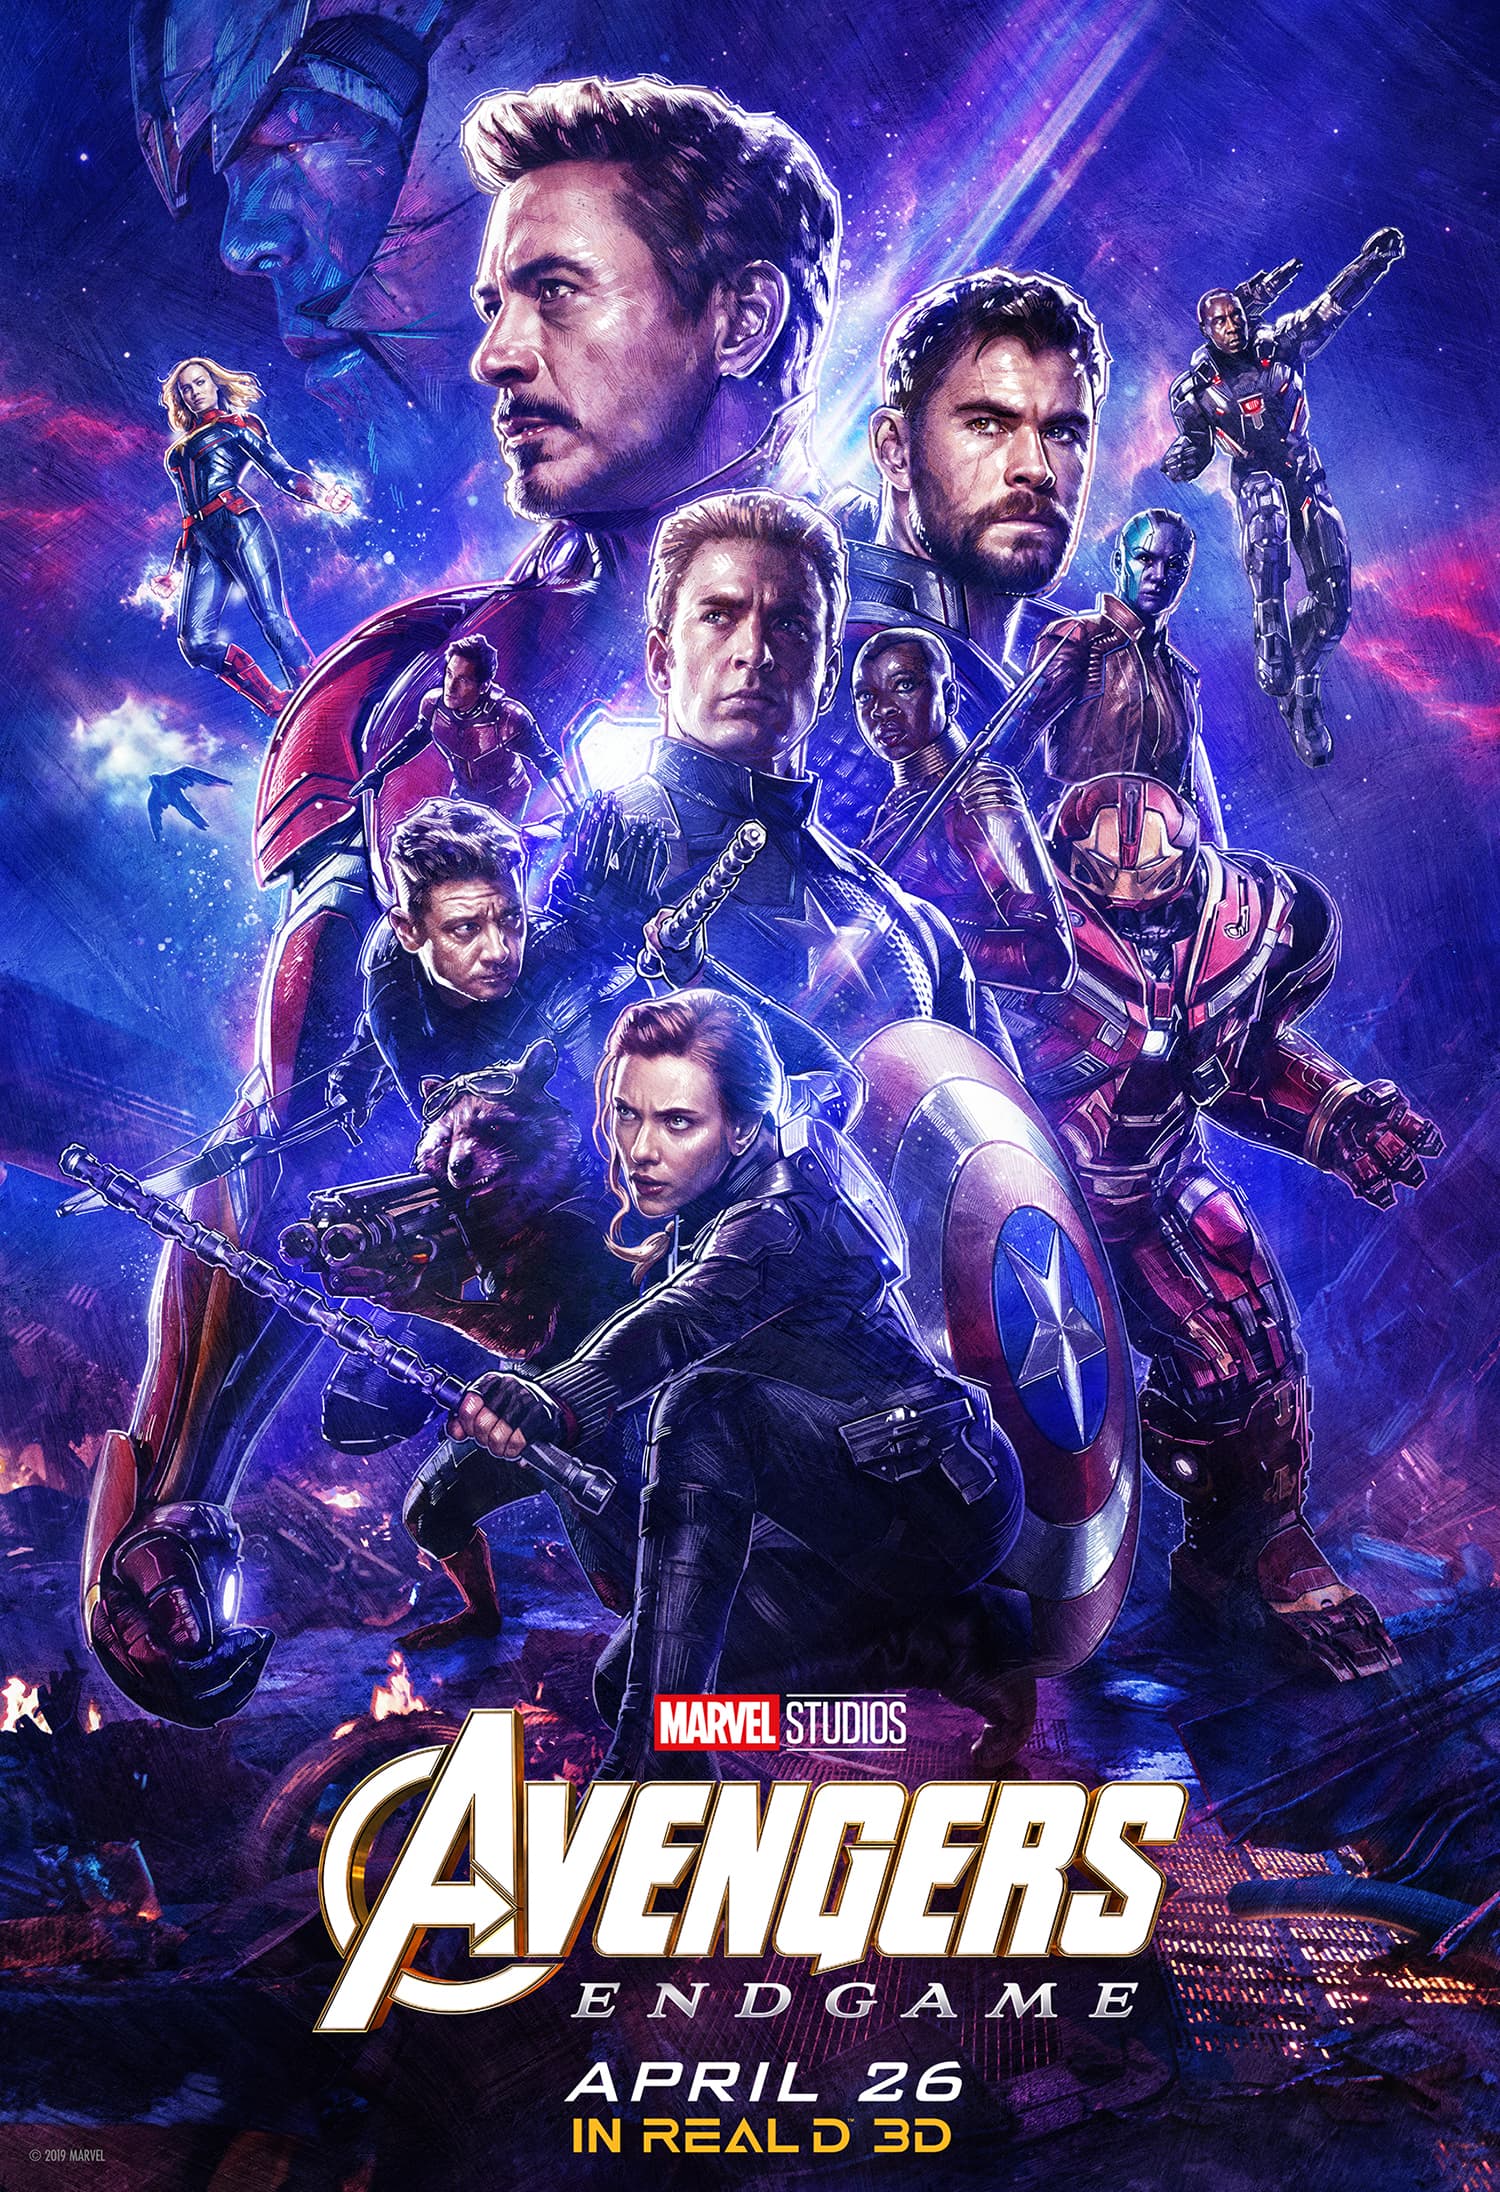 Avengers endgame IMAX Ticket 